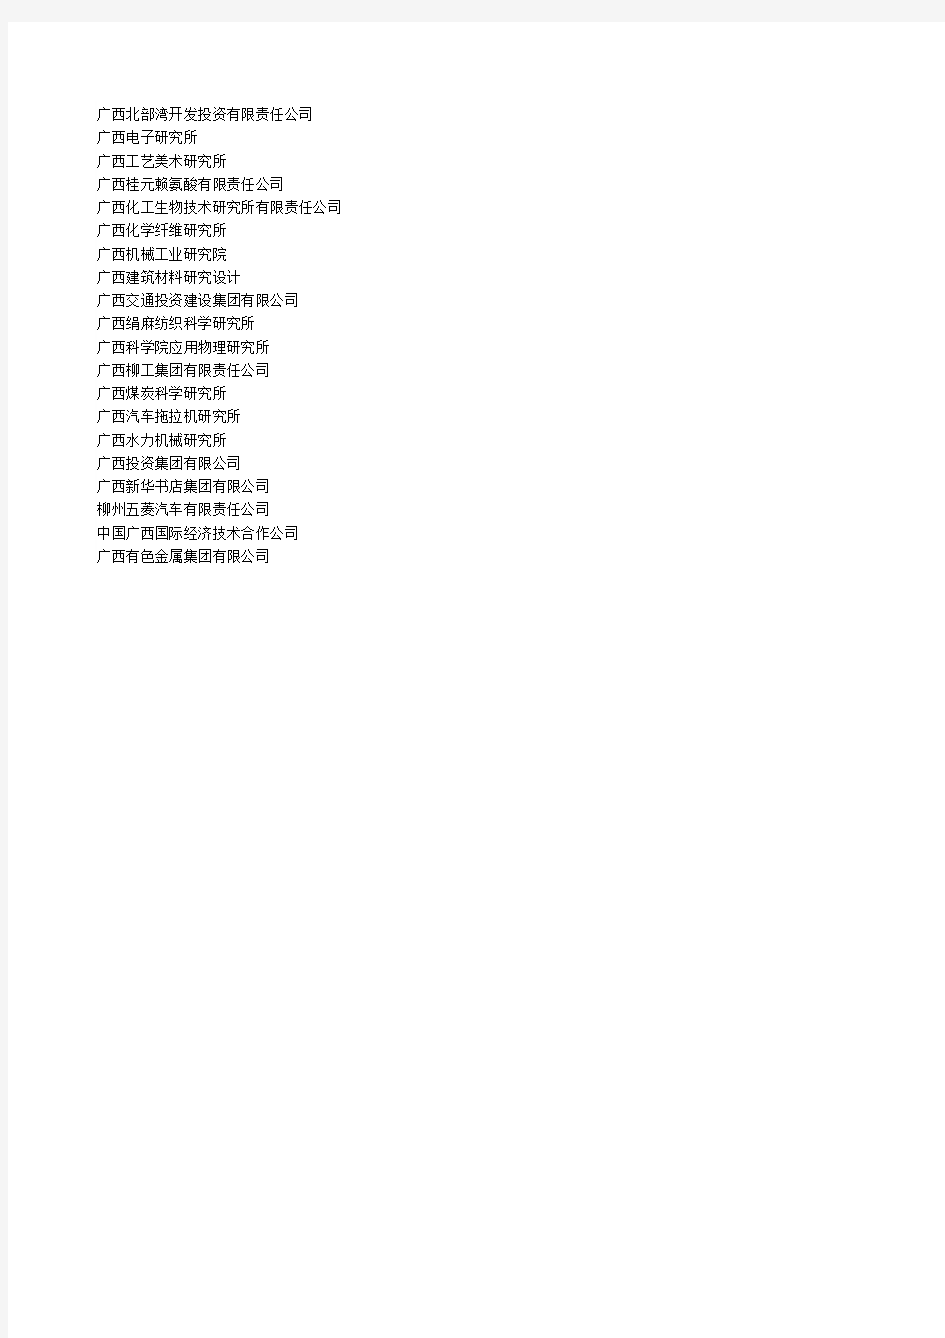 广西国资委企业名单